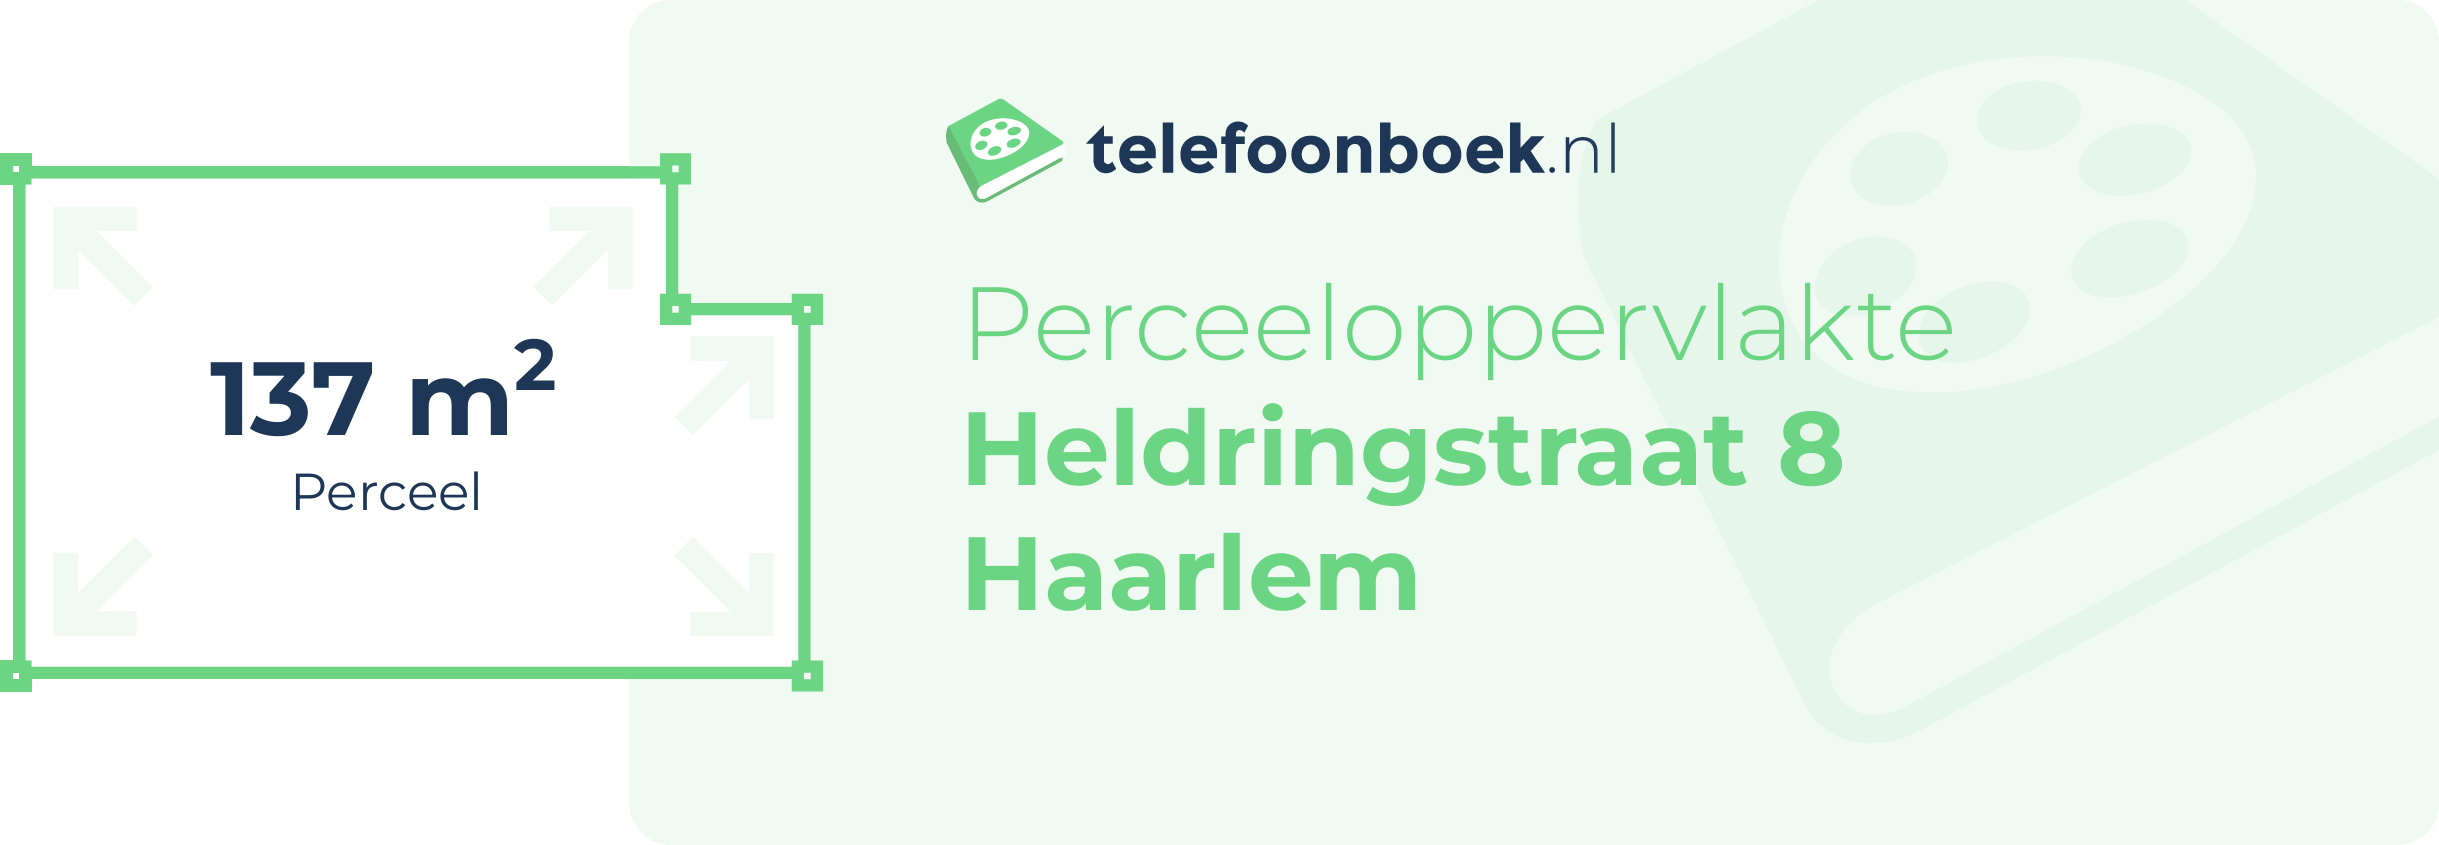 Perceeloppervlakte Heldringstraat 8 Haarlem